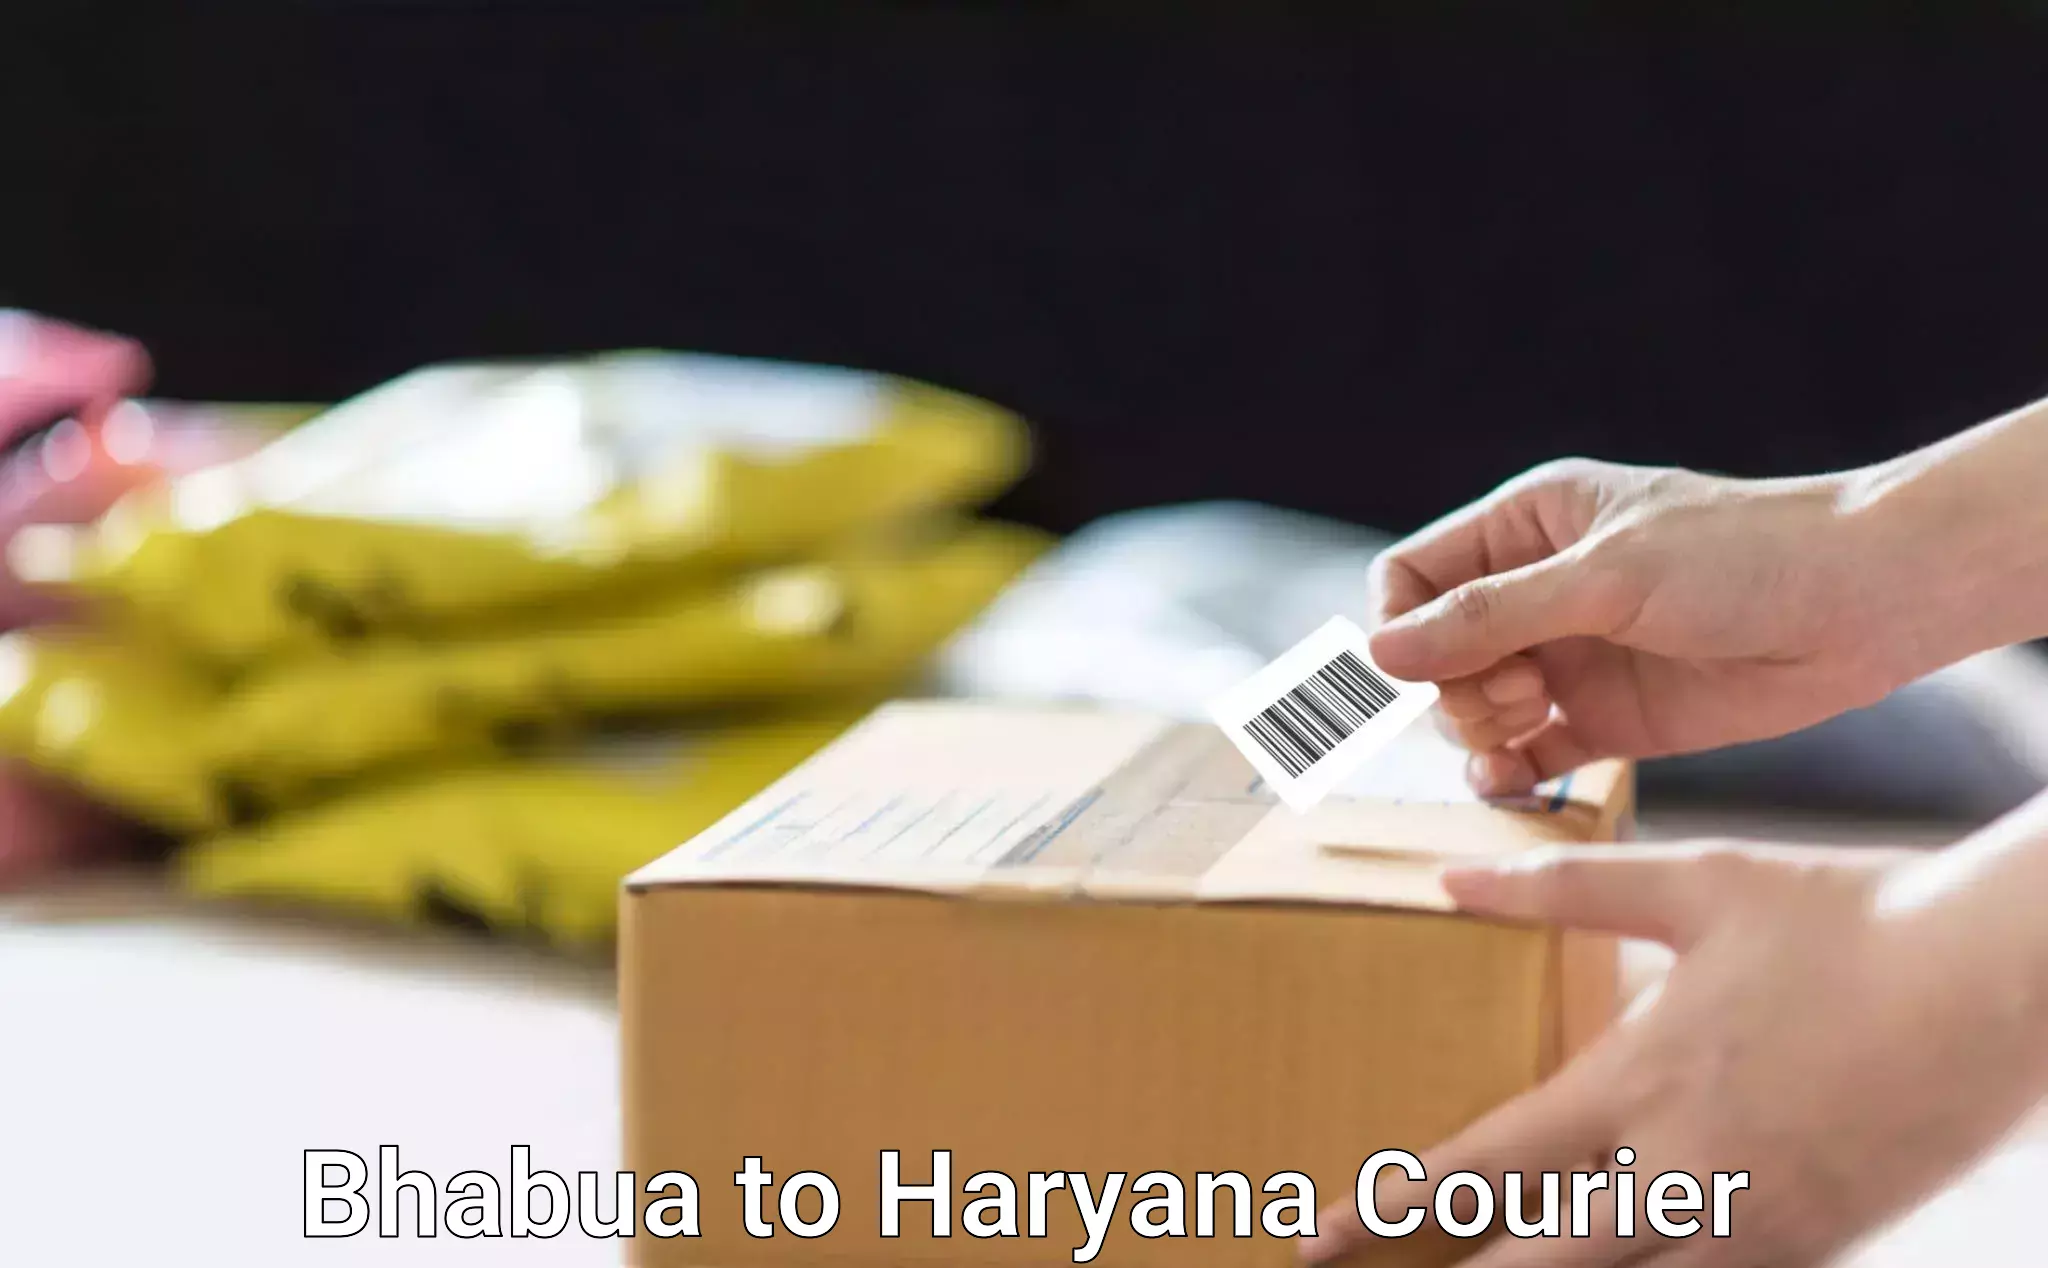 Efficient furniture shifting Bhabua to Chaudhary Charan Singh Haryana Agricultural University Hisar